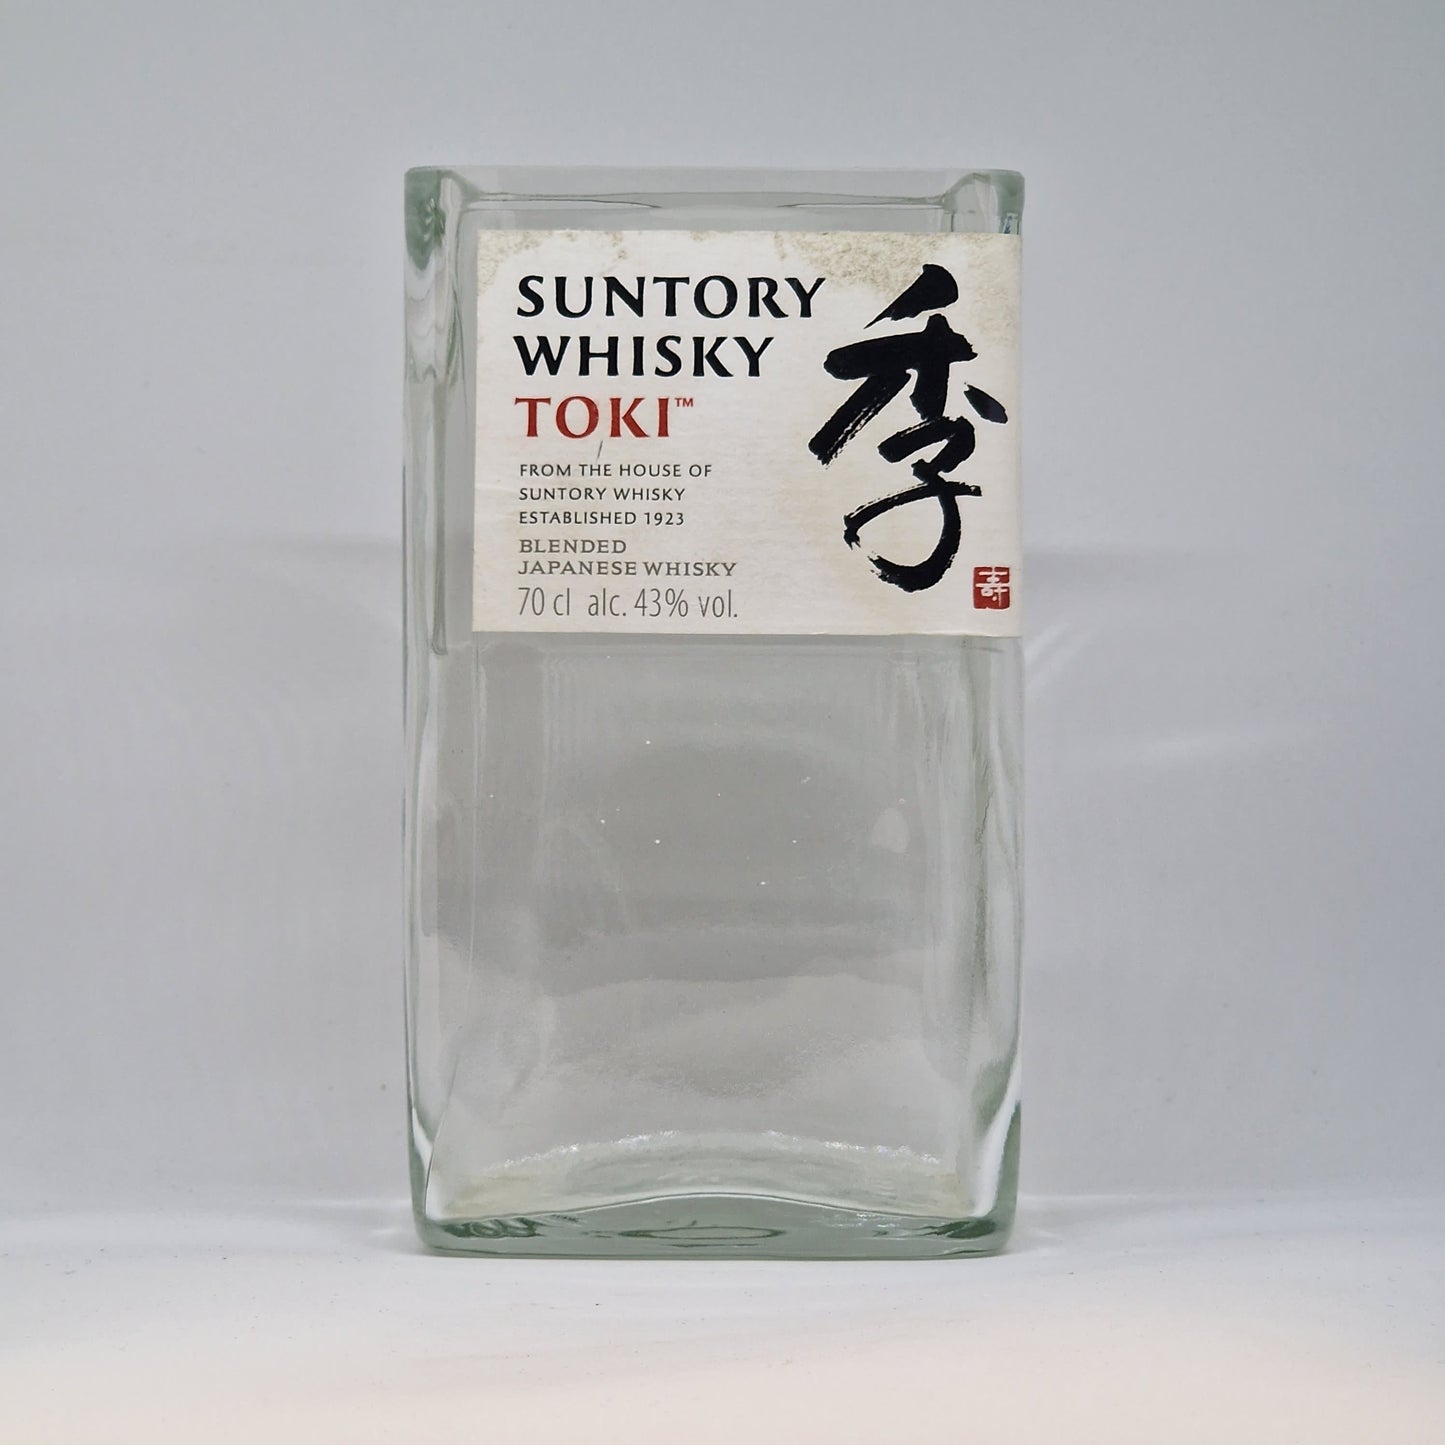 Suntory Whisky Toki Bottle Candle